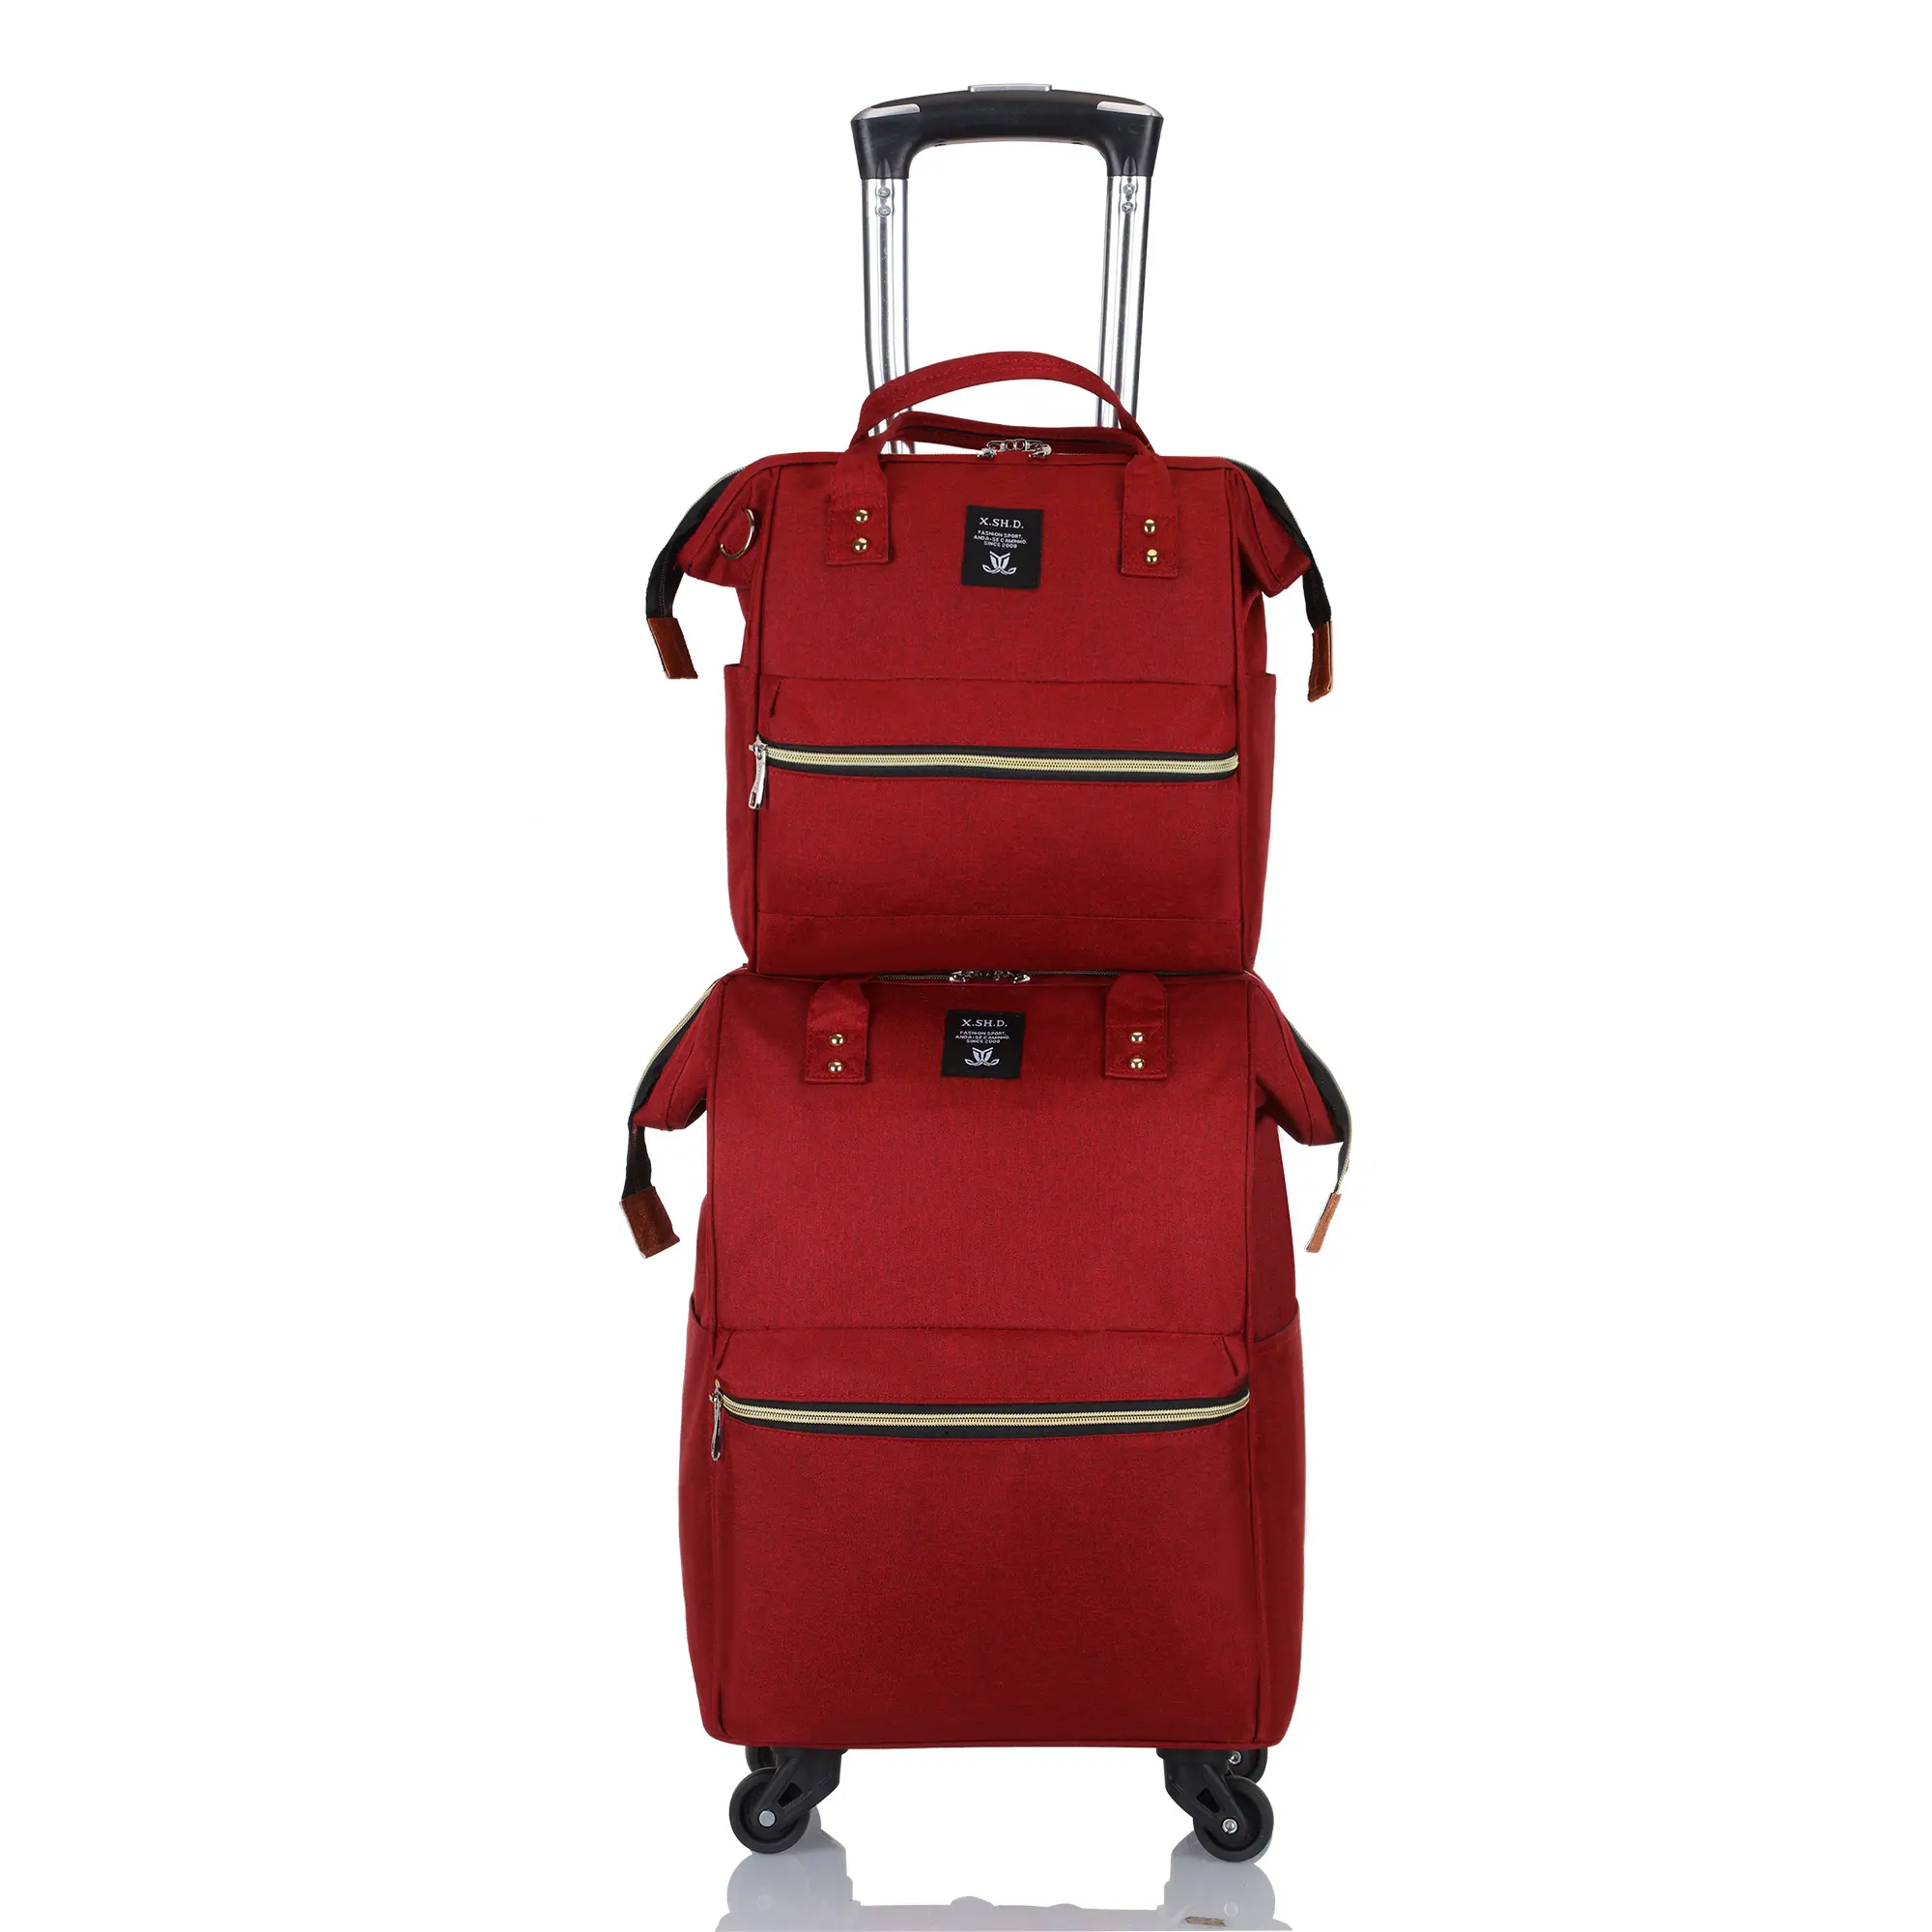 Китайские дешевые сумки на колесиках 2 в 1, дорожные сумки, чемоданы